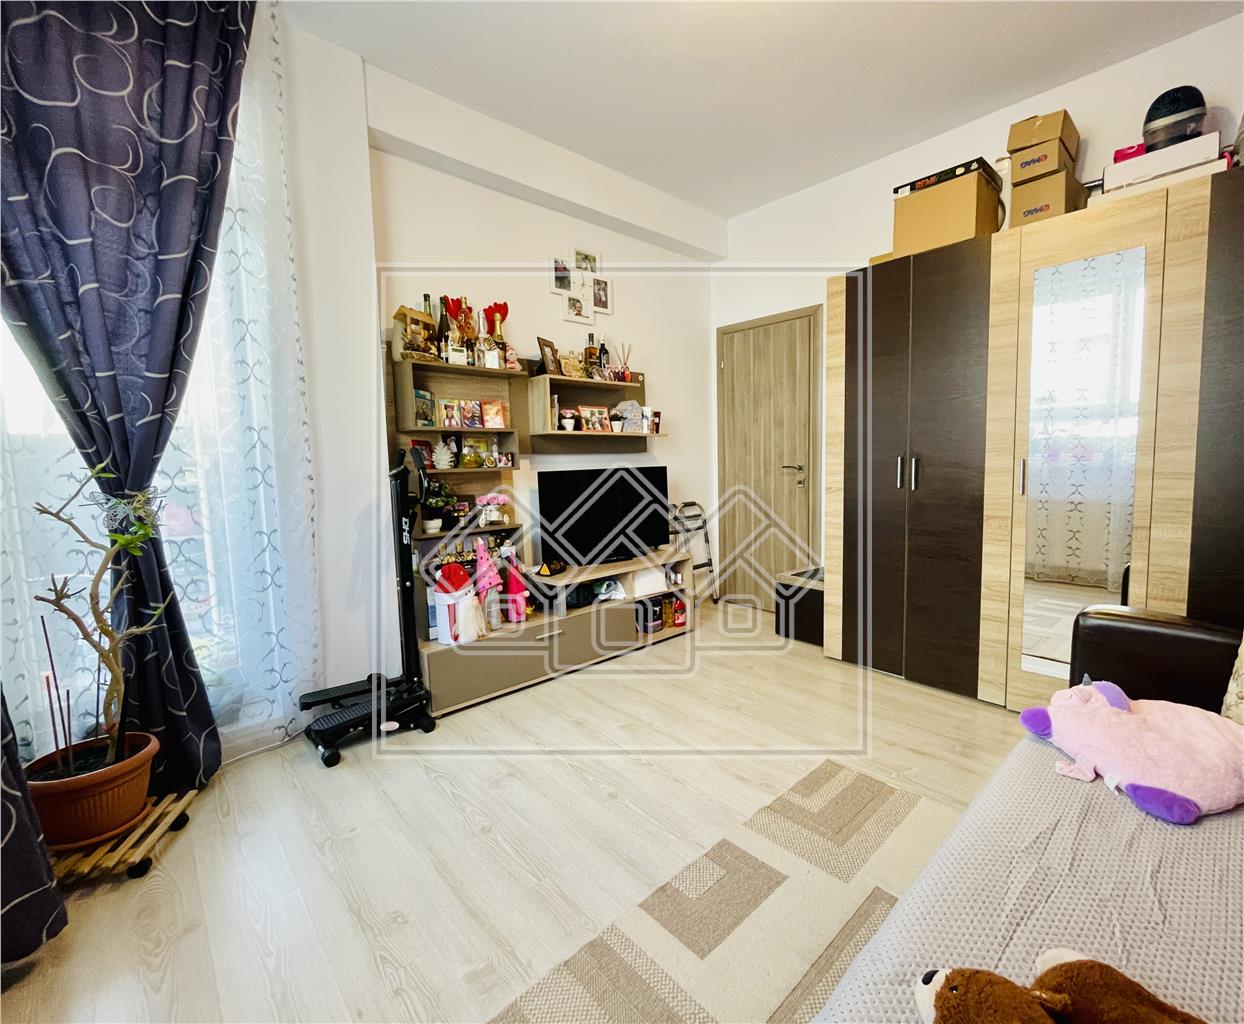 Wohnung zum Verkauf in Sibiu - 2 Zimmer und privater Garten - Turnisor